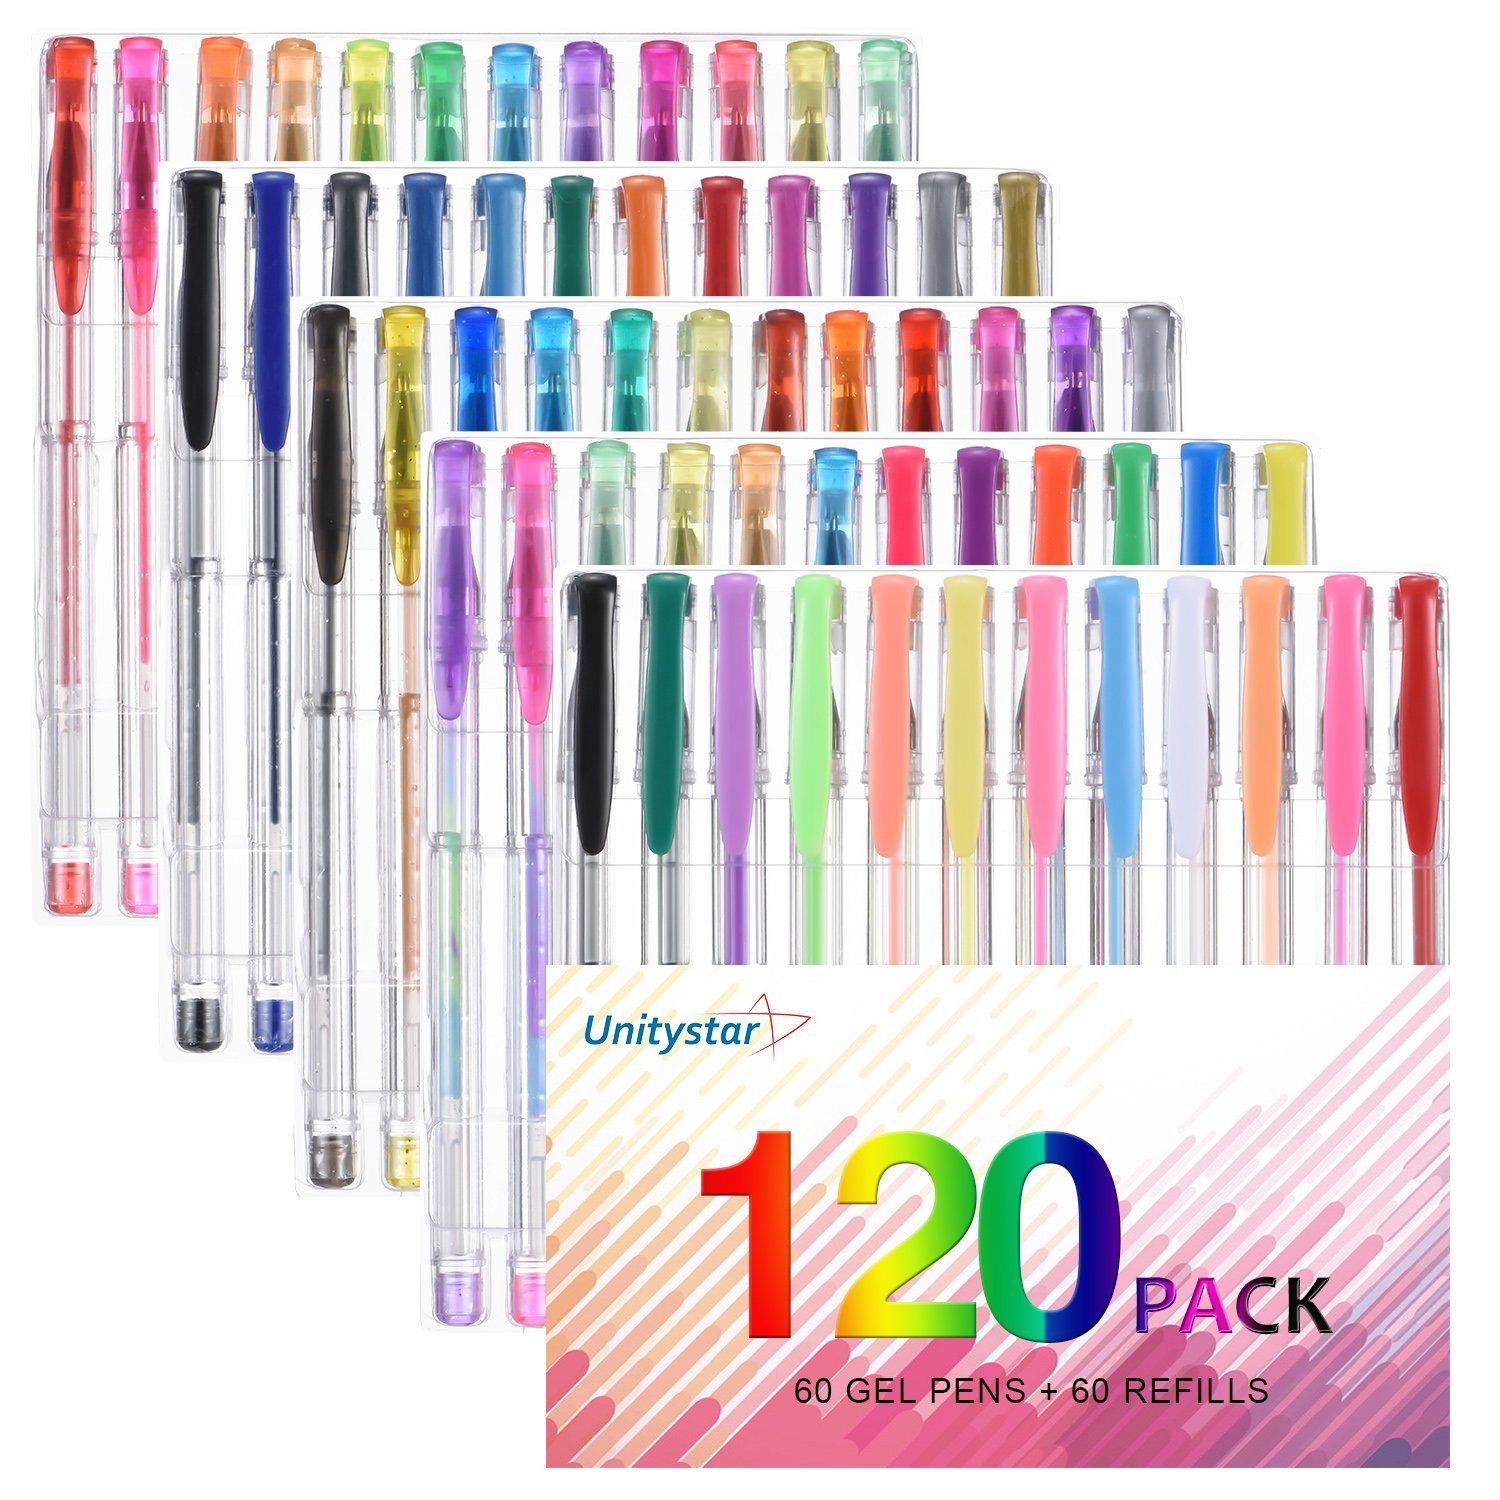 120 Color Gel Pens Set – Just $15.99!